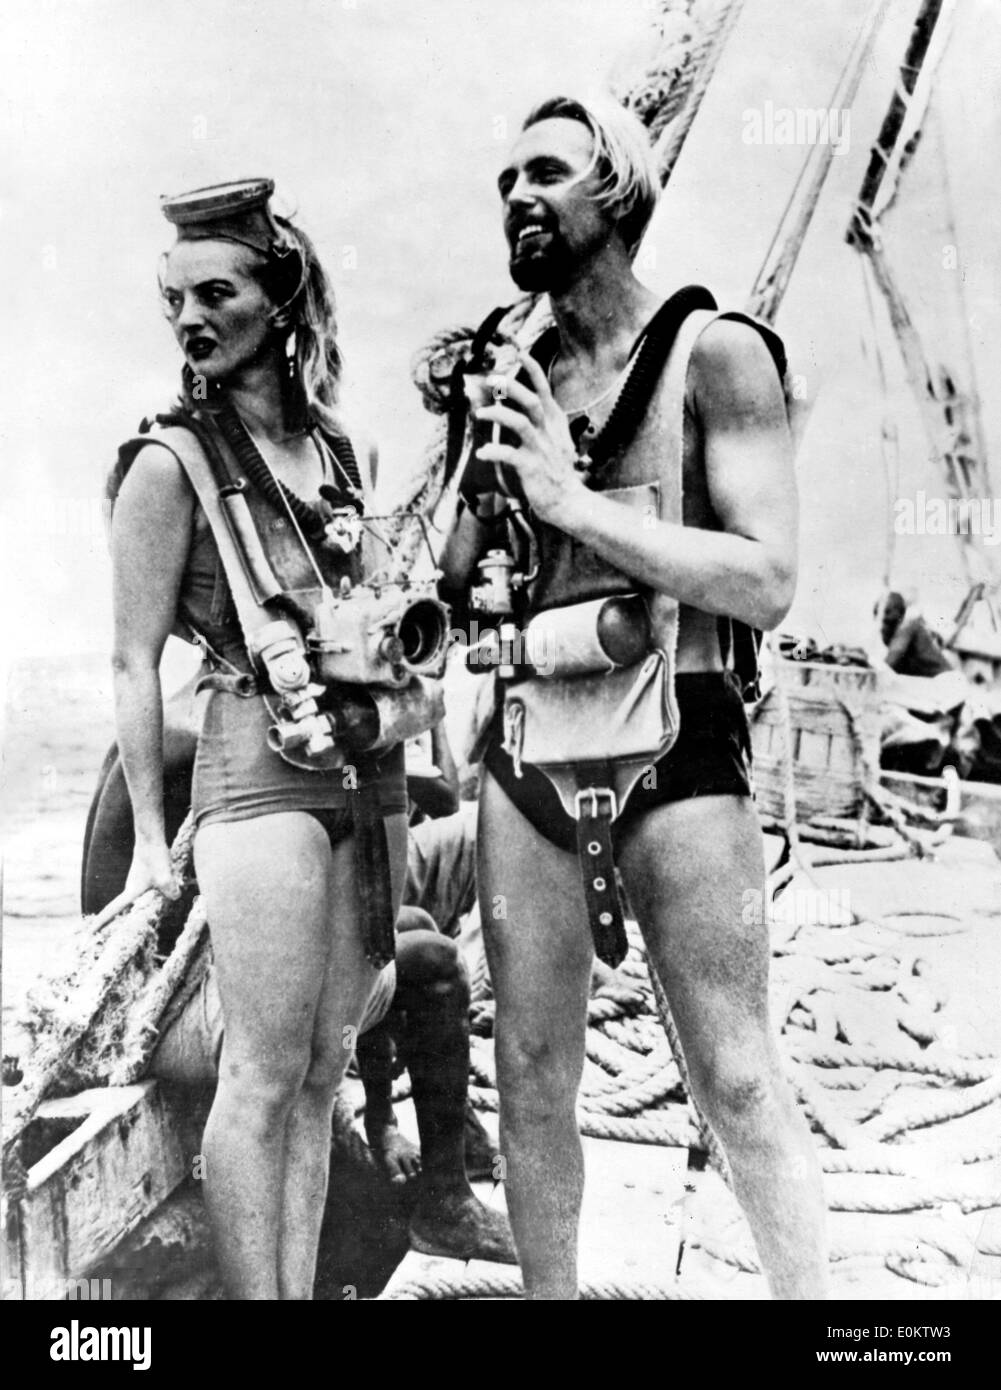 Pionero del buceo Hans Hass y esposa Lotte antes de una inmersión Foto de stock